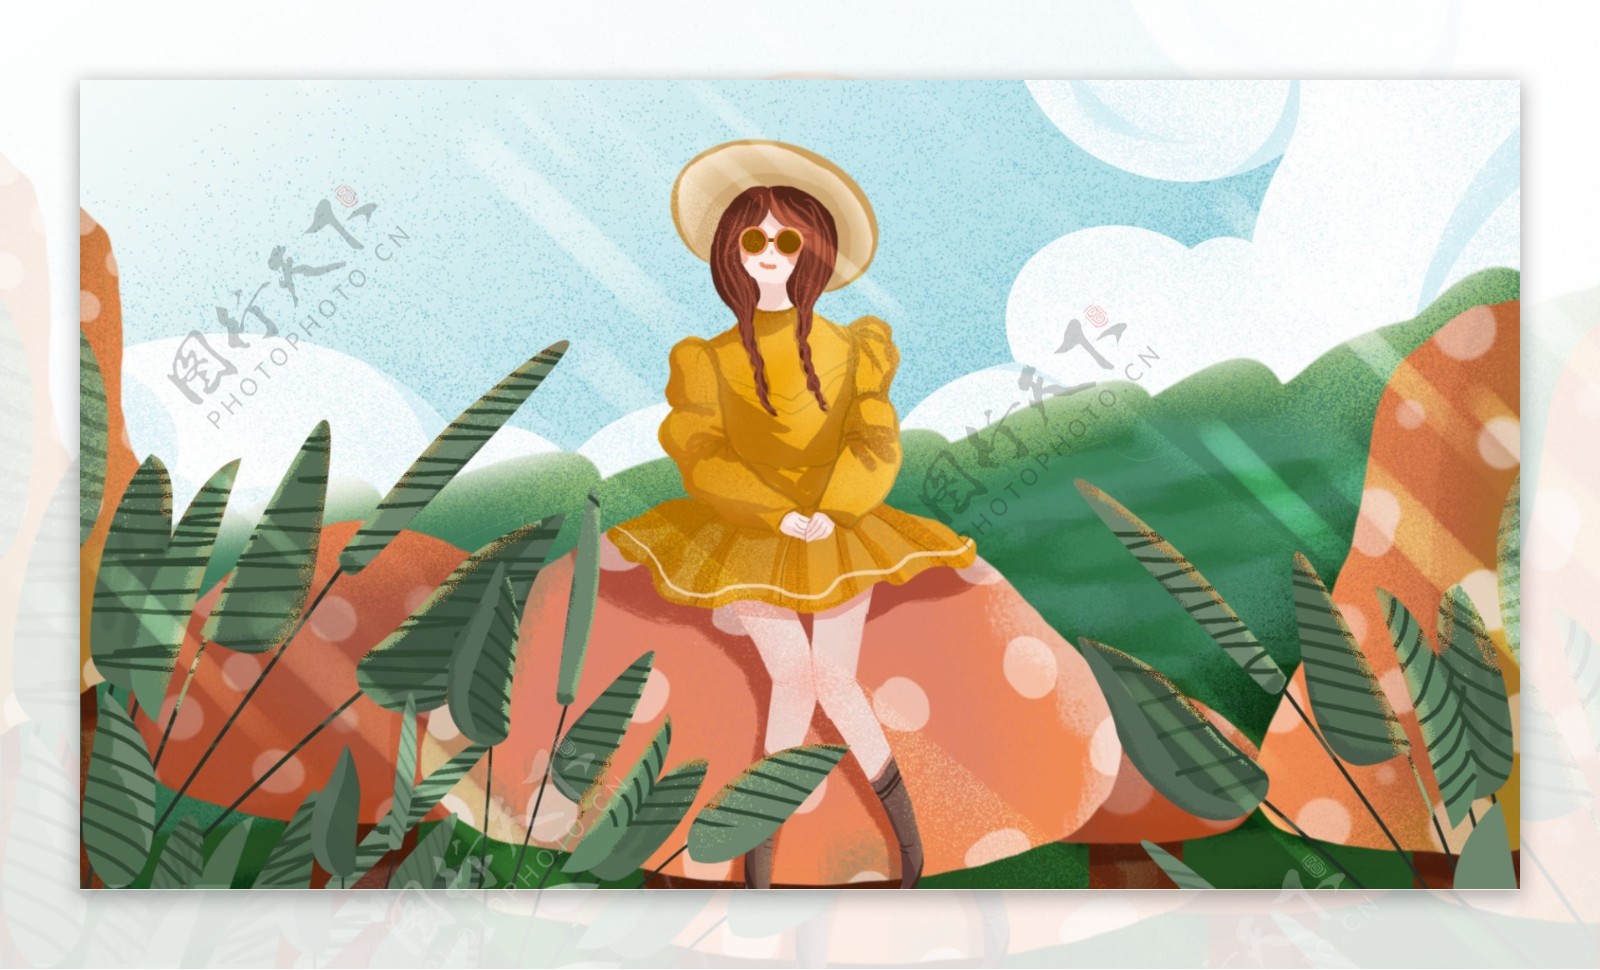 原创手绘插画坐在蘑菇女孩背景设计